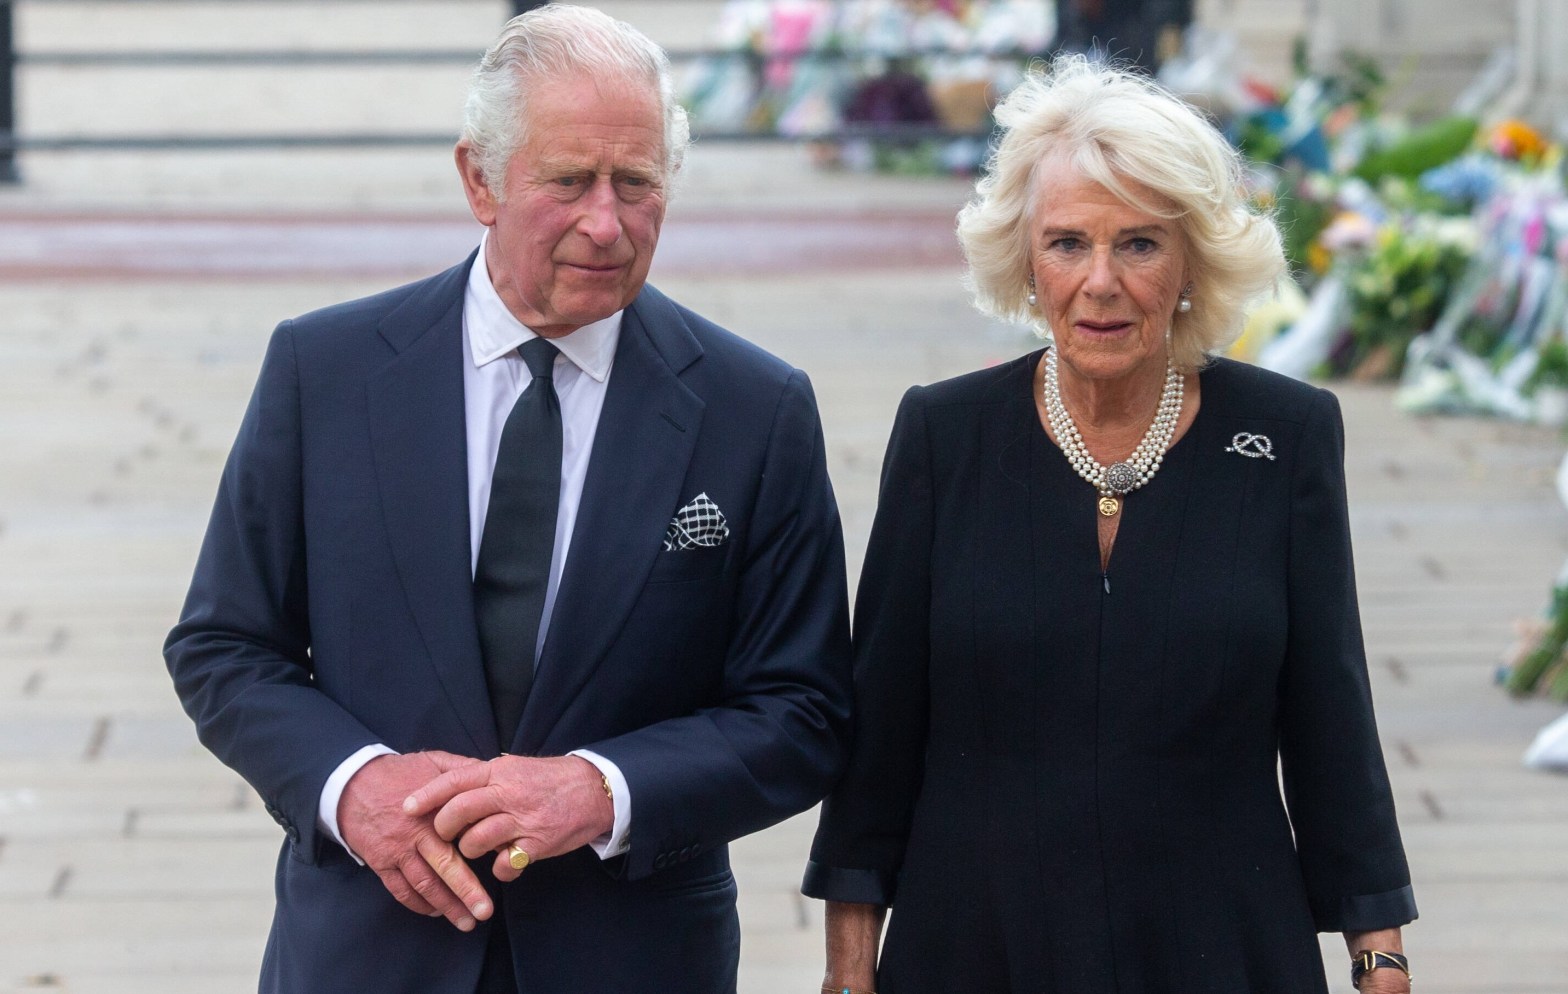 König Charles III. und Camilla: „In Tränen ausgebrochen“ – Royals-Expertin enthüllt emotionalen Moment